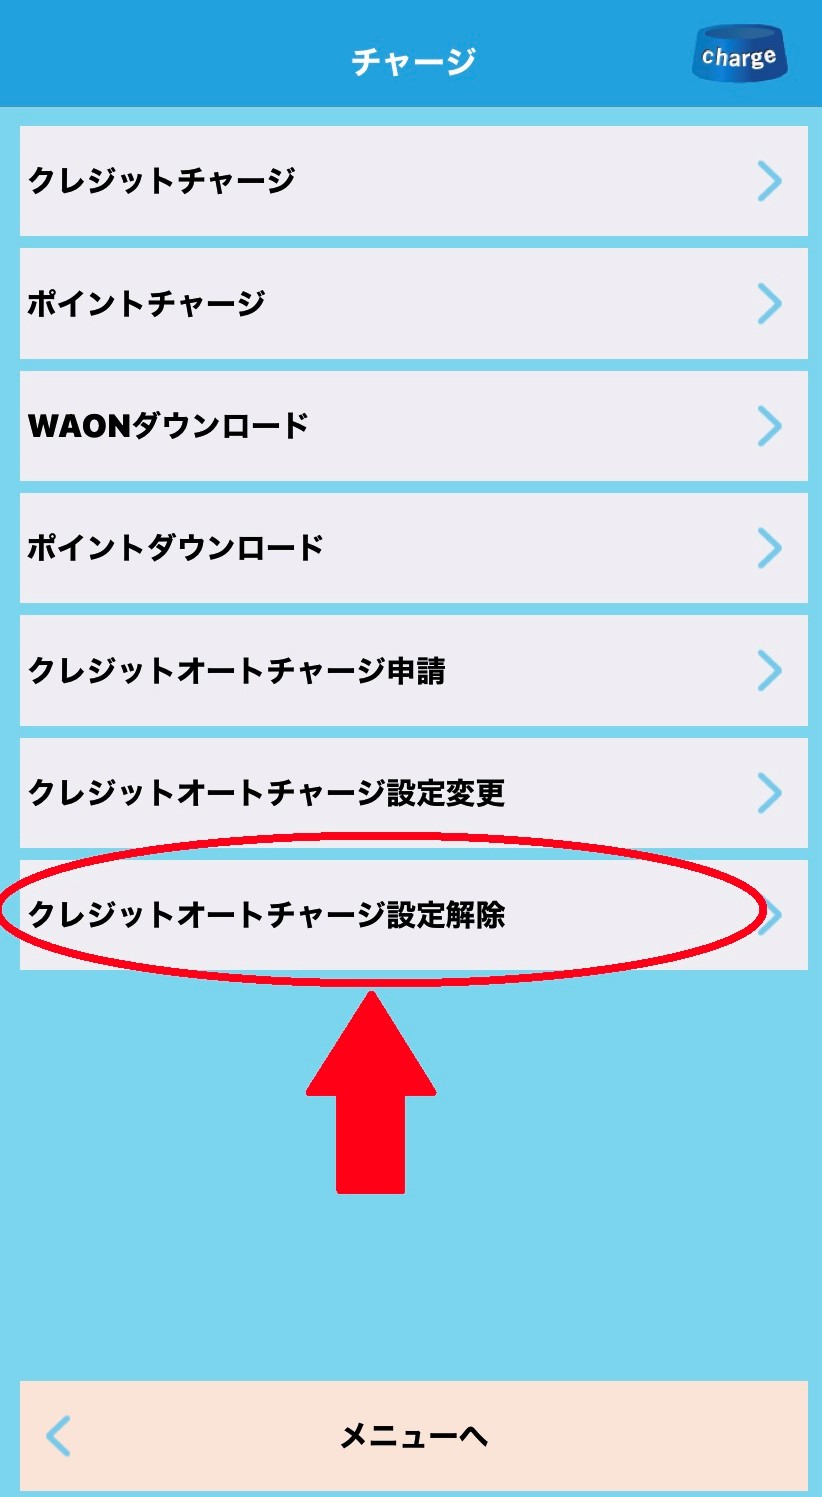 waon-app2 kaijyo